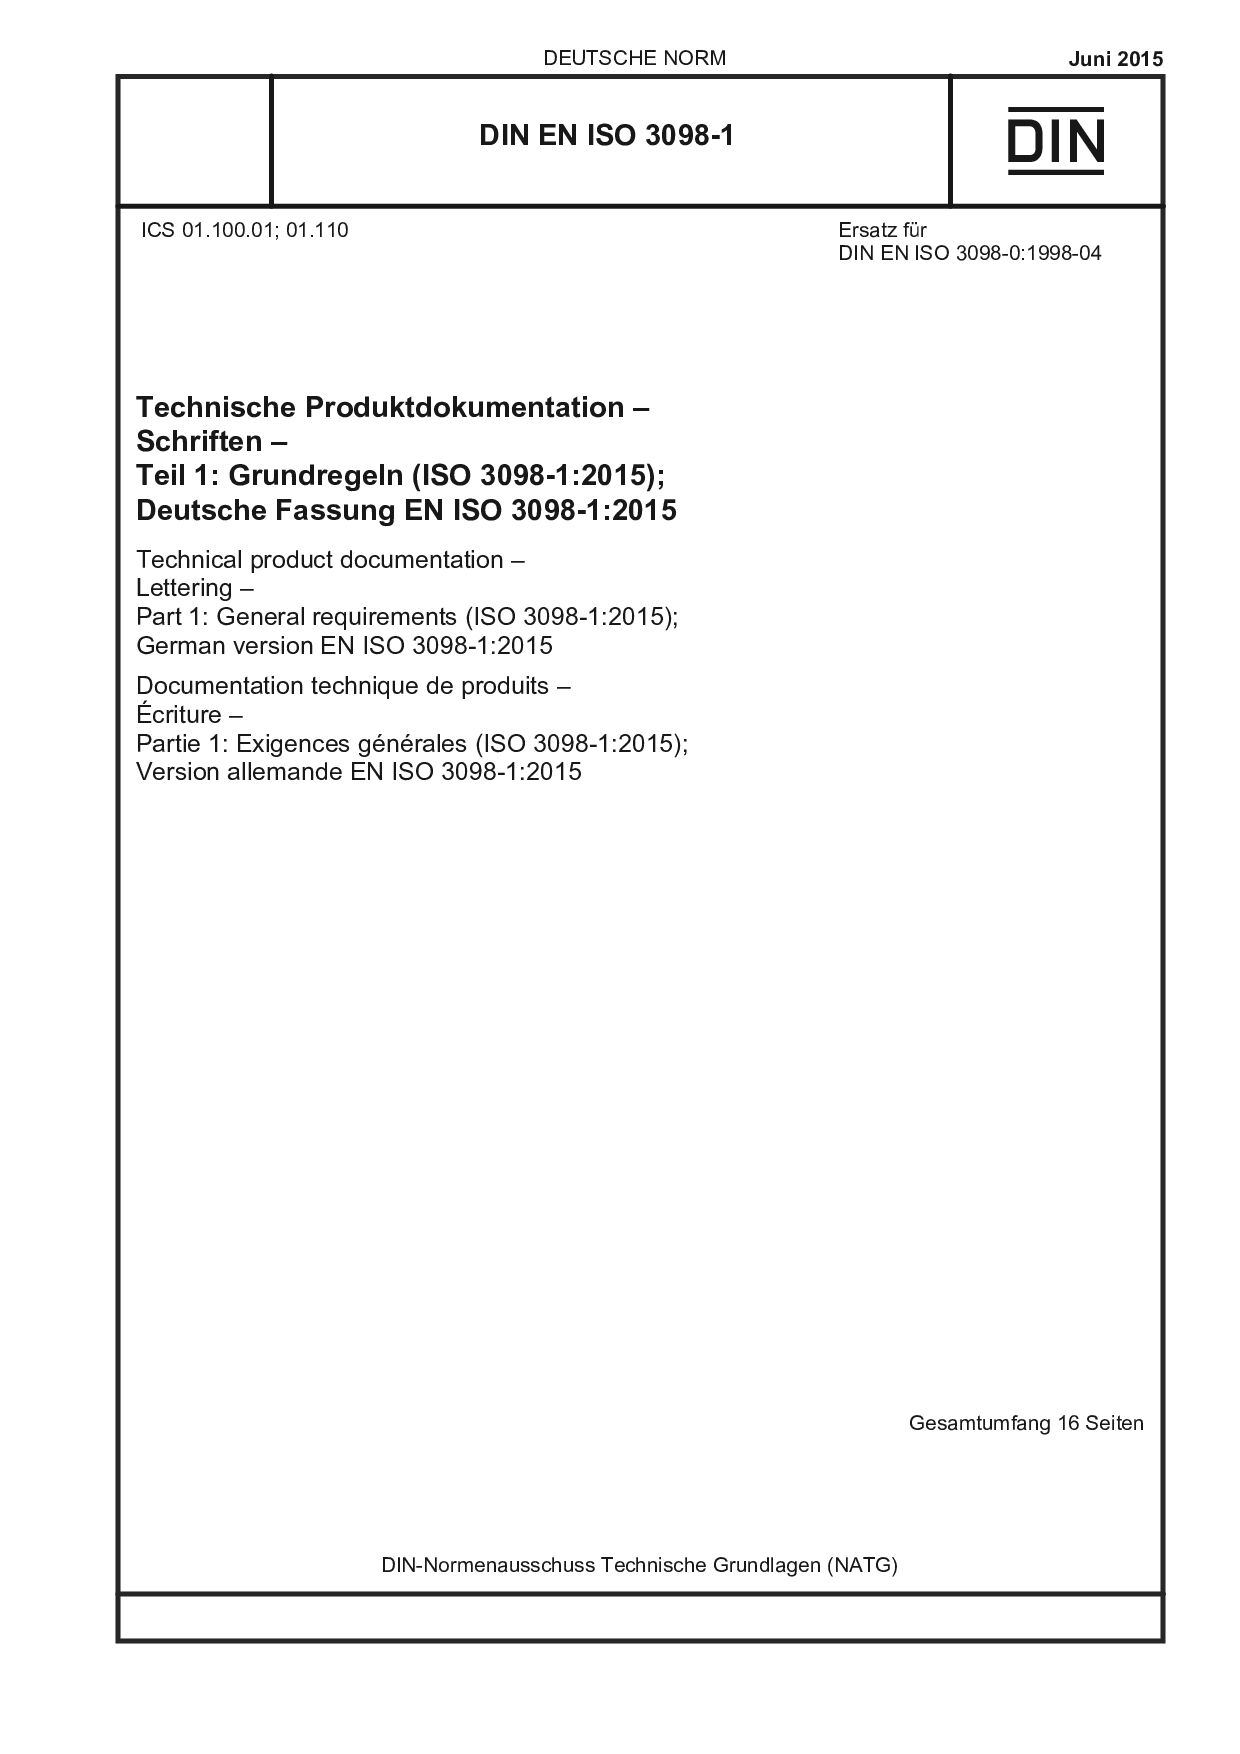 DIN EN ISO 3098-1:2015-06